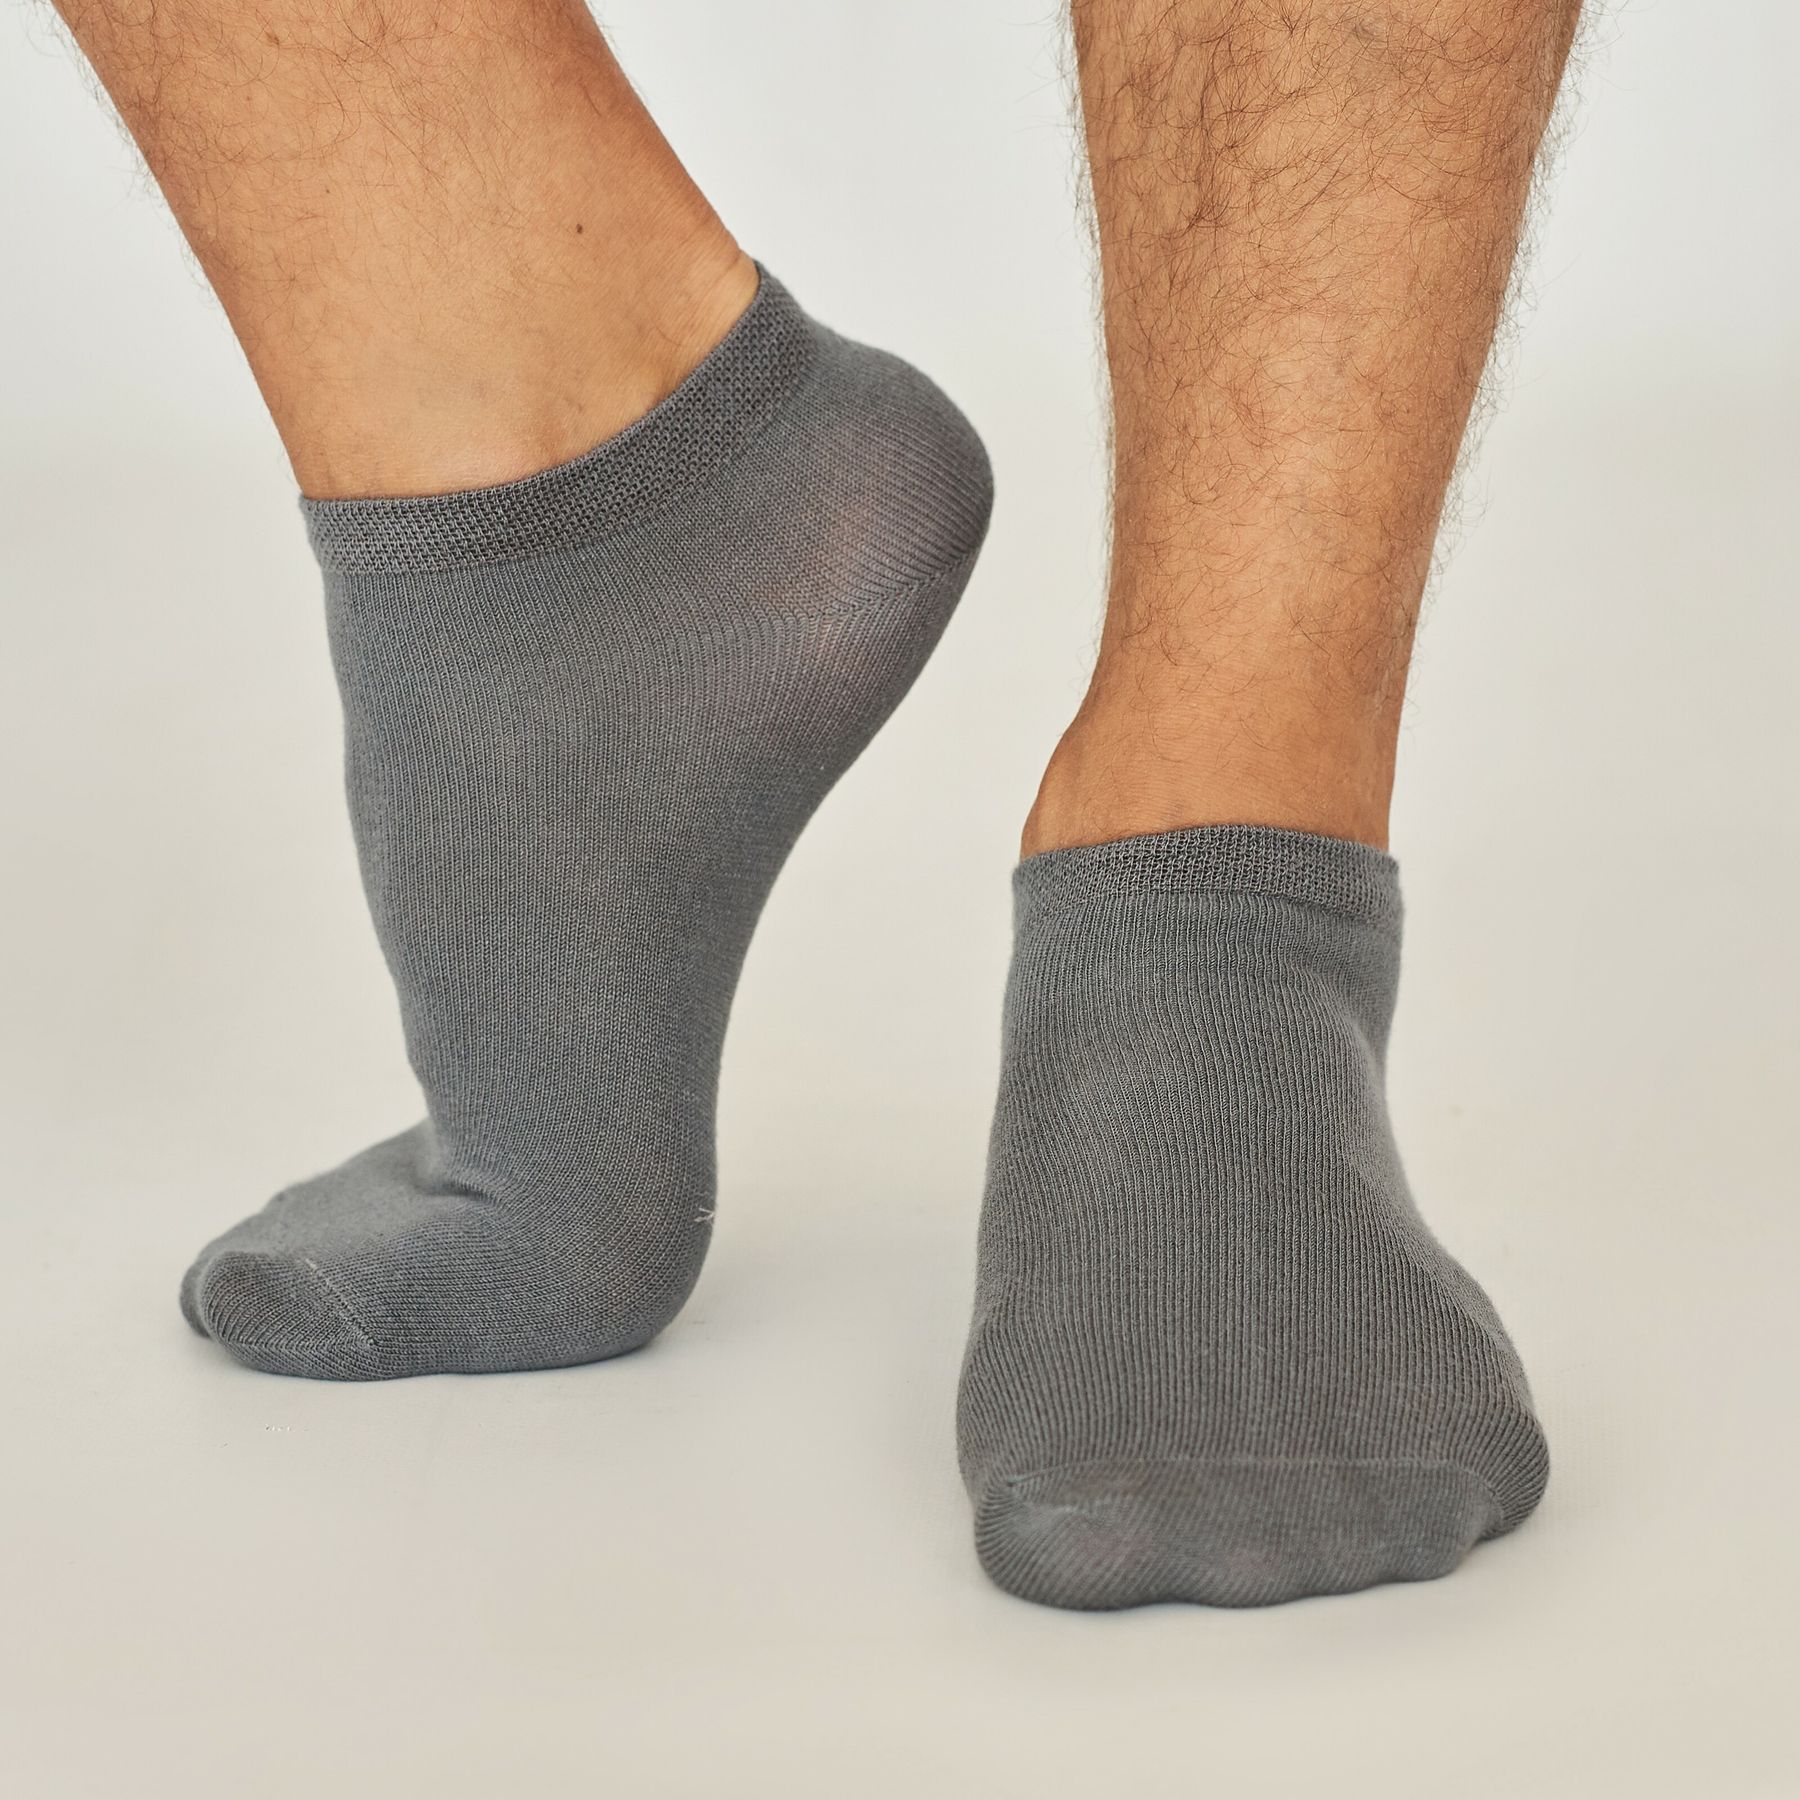 Men's ankle BAMBOO socks, dark grey - Ukrainian socks manufacturer